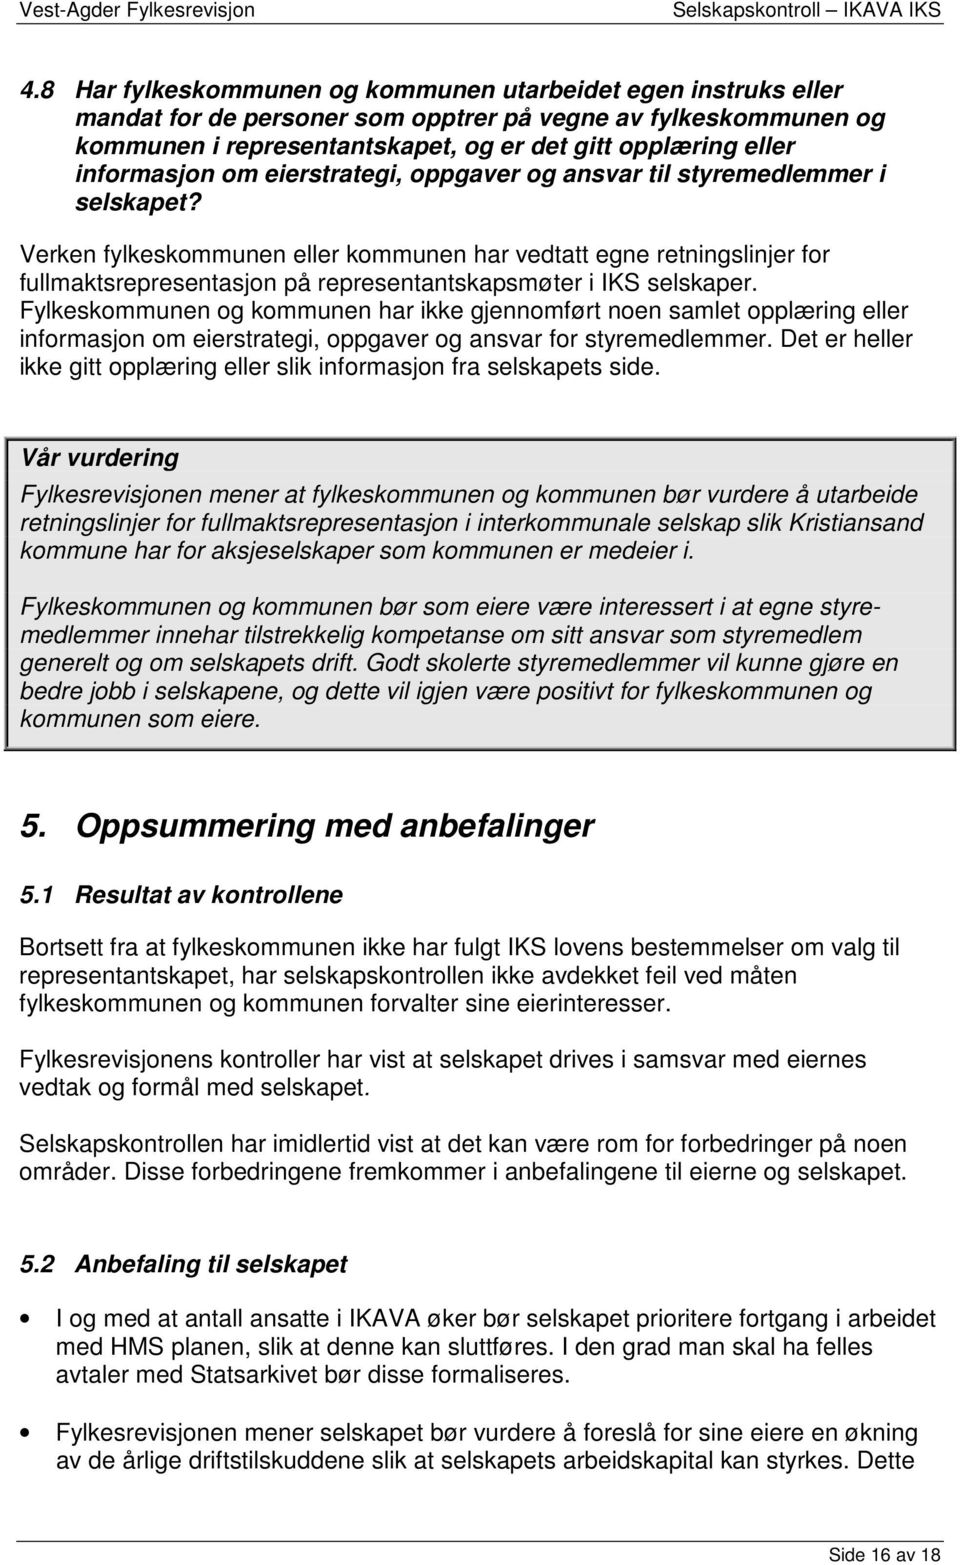 Verken fylkeskommunen eller kommunen har vedtatt egne retningslinjer for fullmaktsrepresentasjon på representantskapsmøter i IKS selskaper.